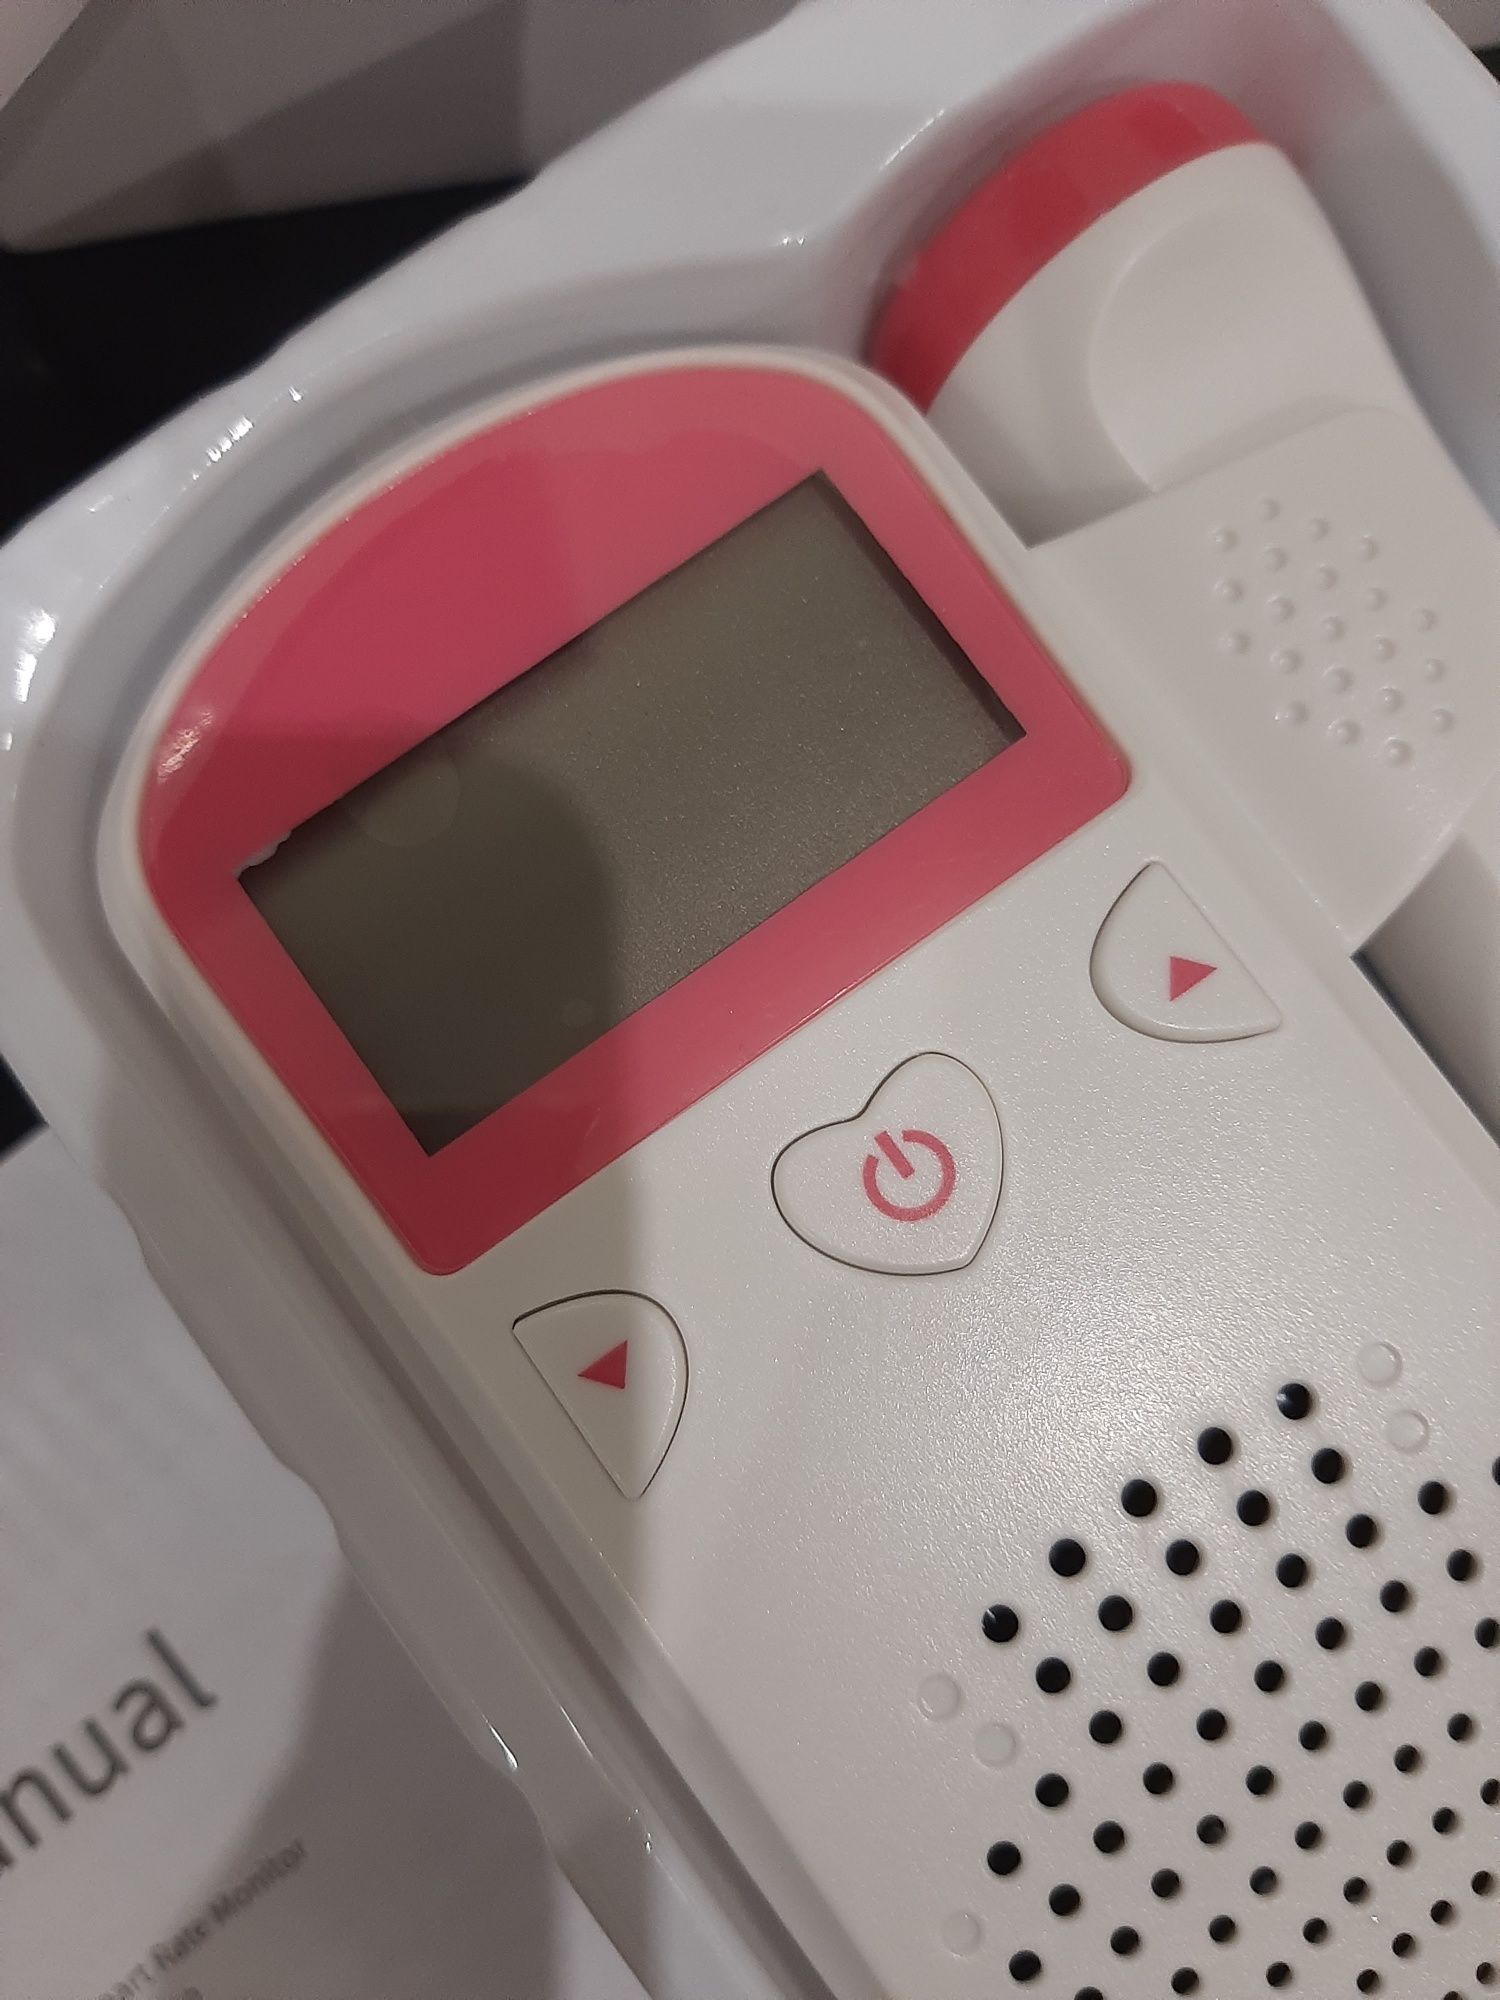 Doppler fetal com ecrã  novo na caixa para ouvir coração do bebé

Dá